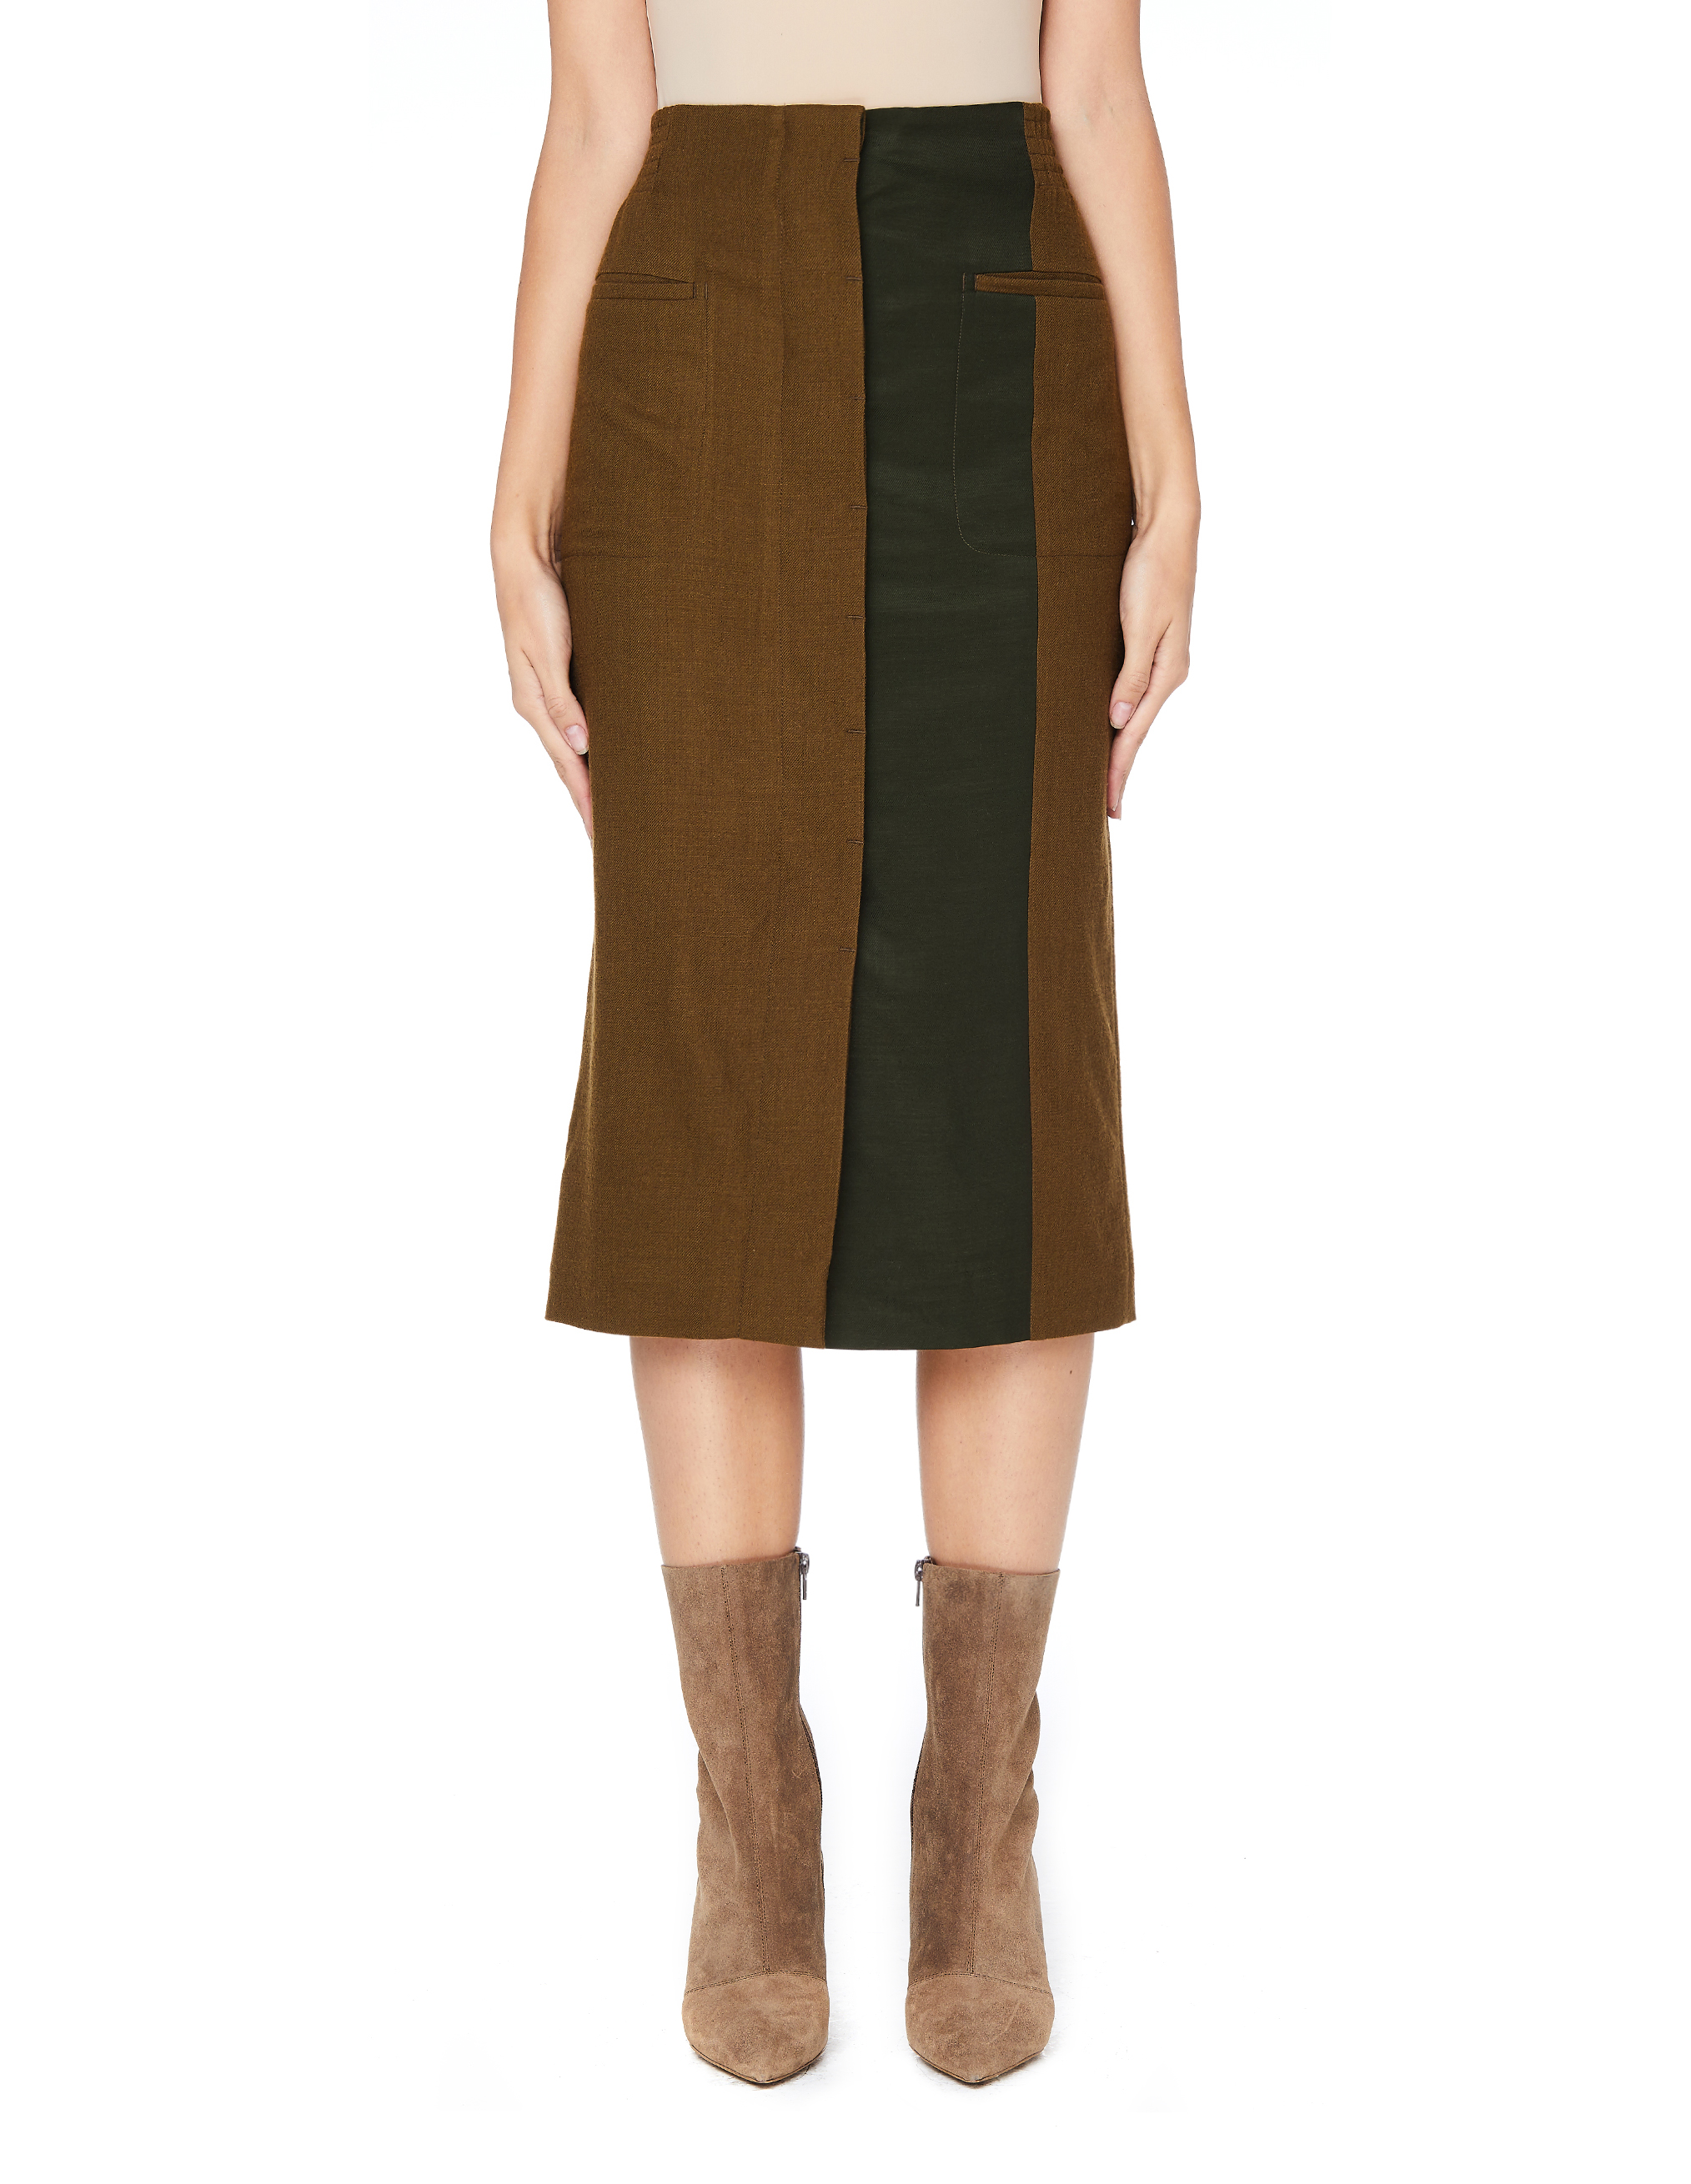 Шерстяная юбка цвета хаки - Haider Ackermann 184-5600-435-035